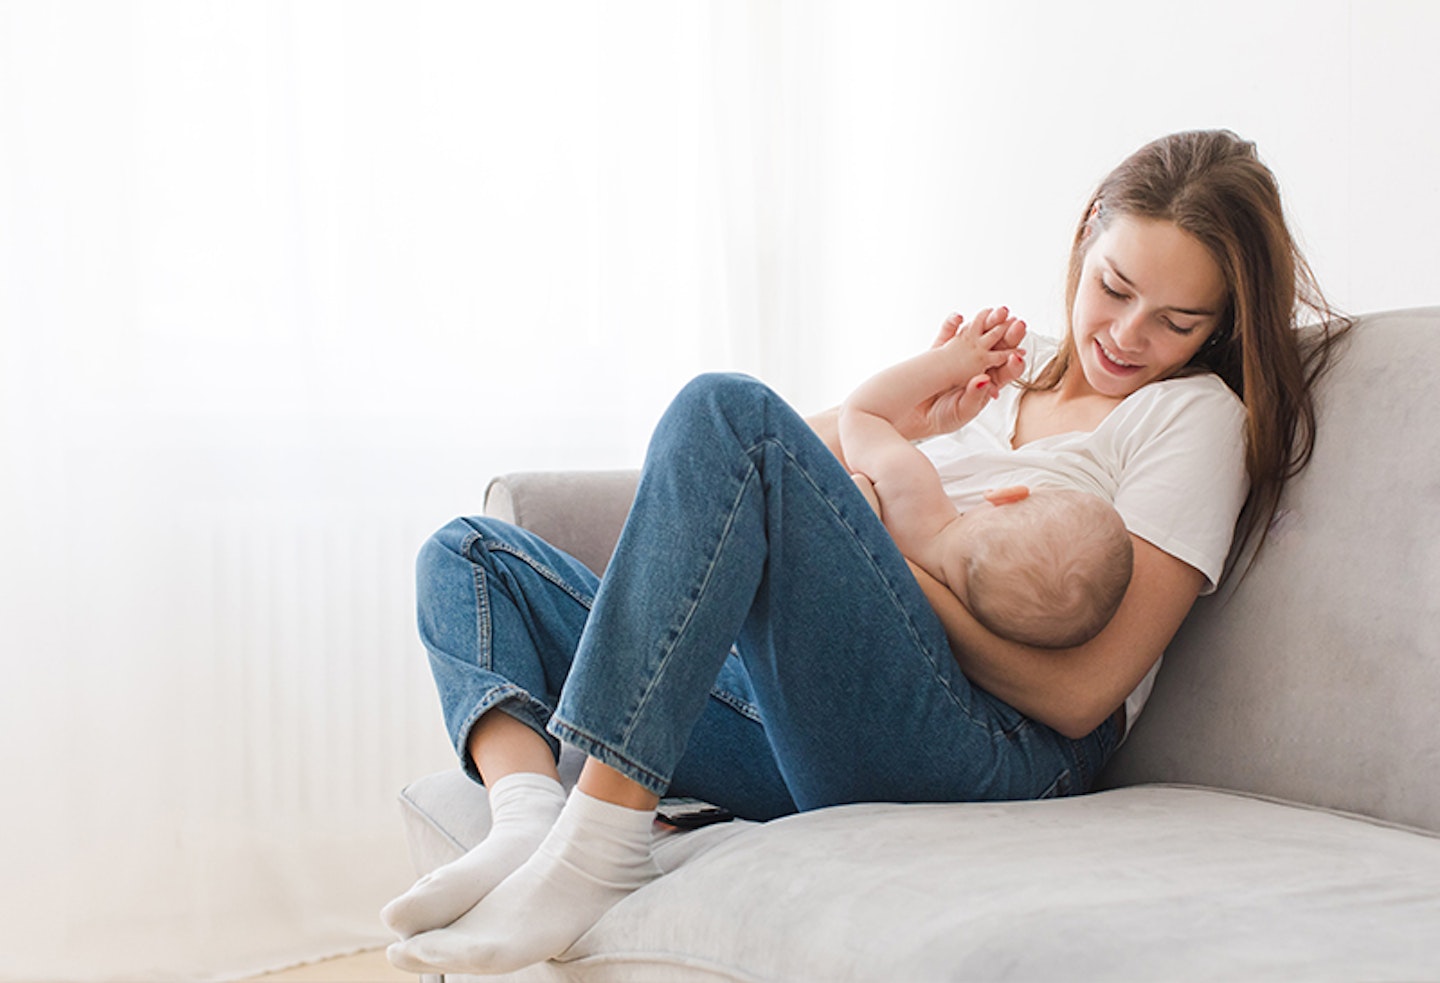 5 Breastfeeding Essentials Every New Mom Needs - New Mom School